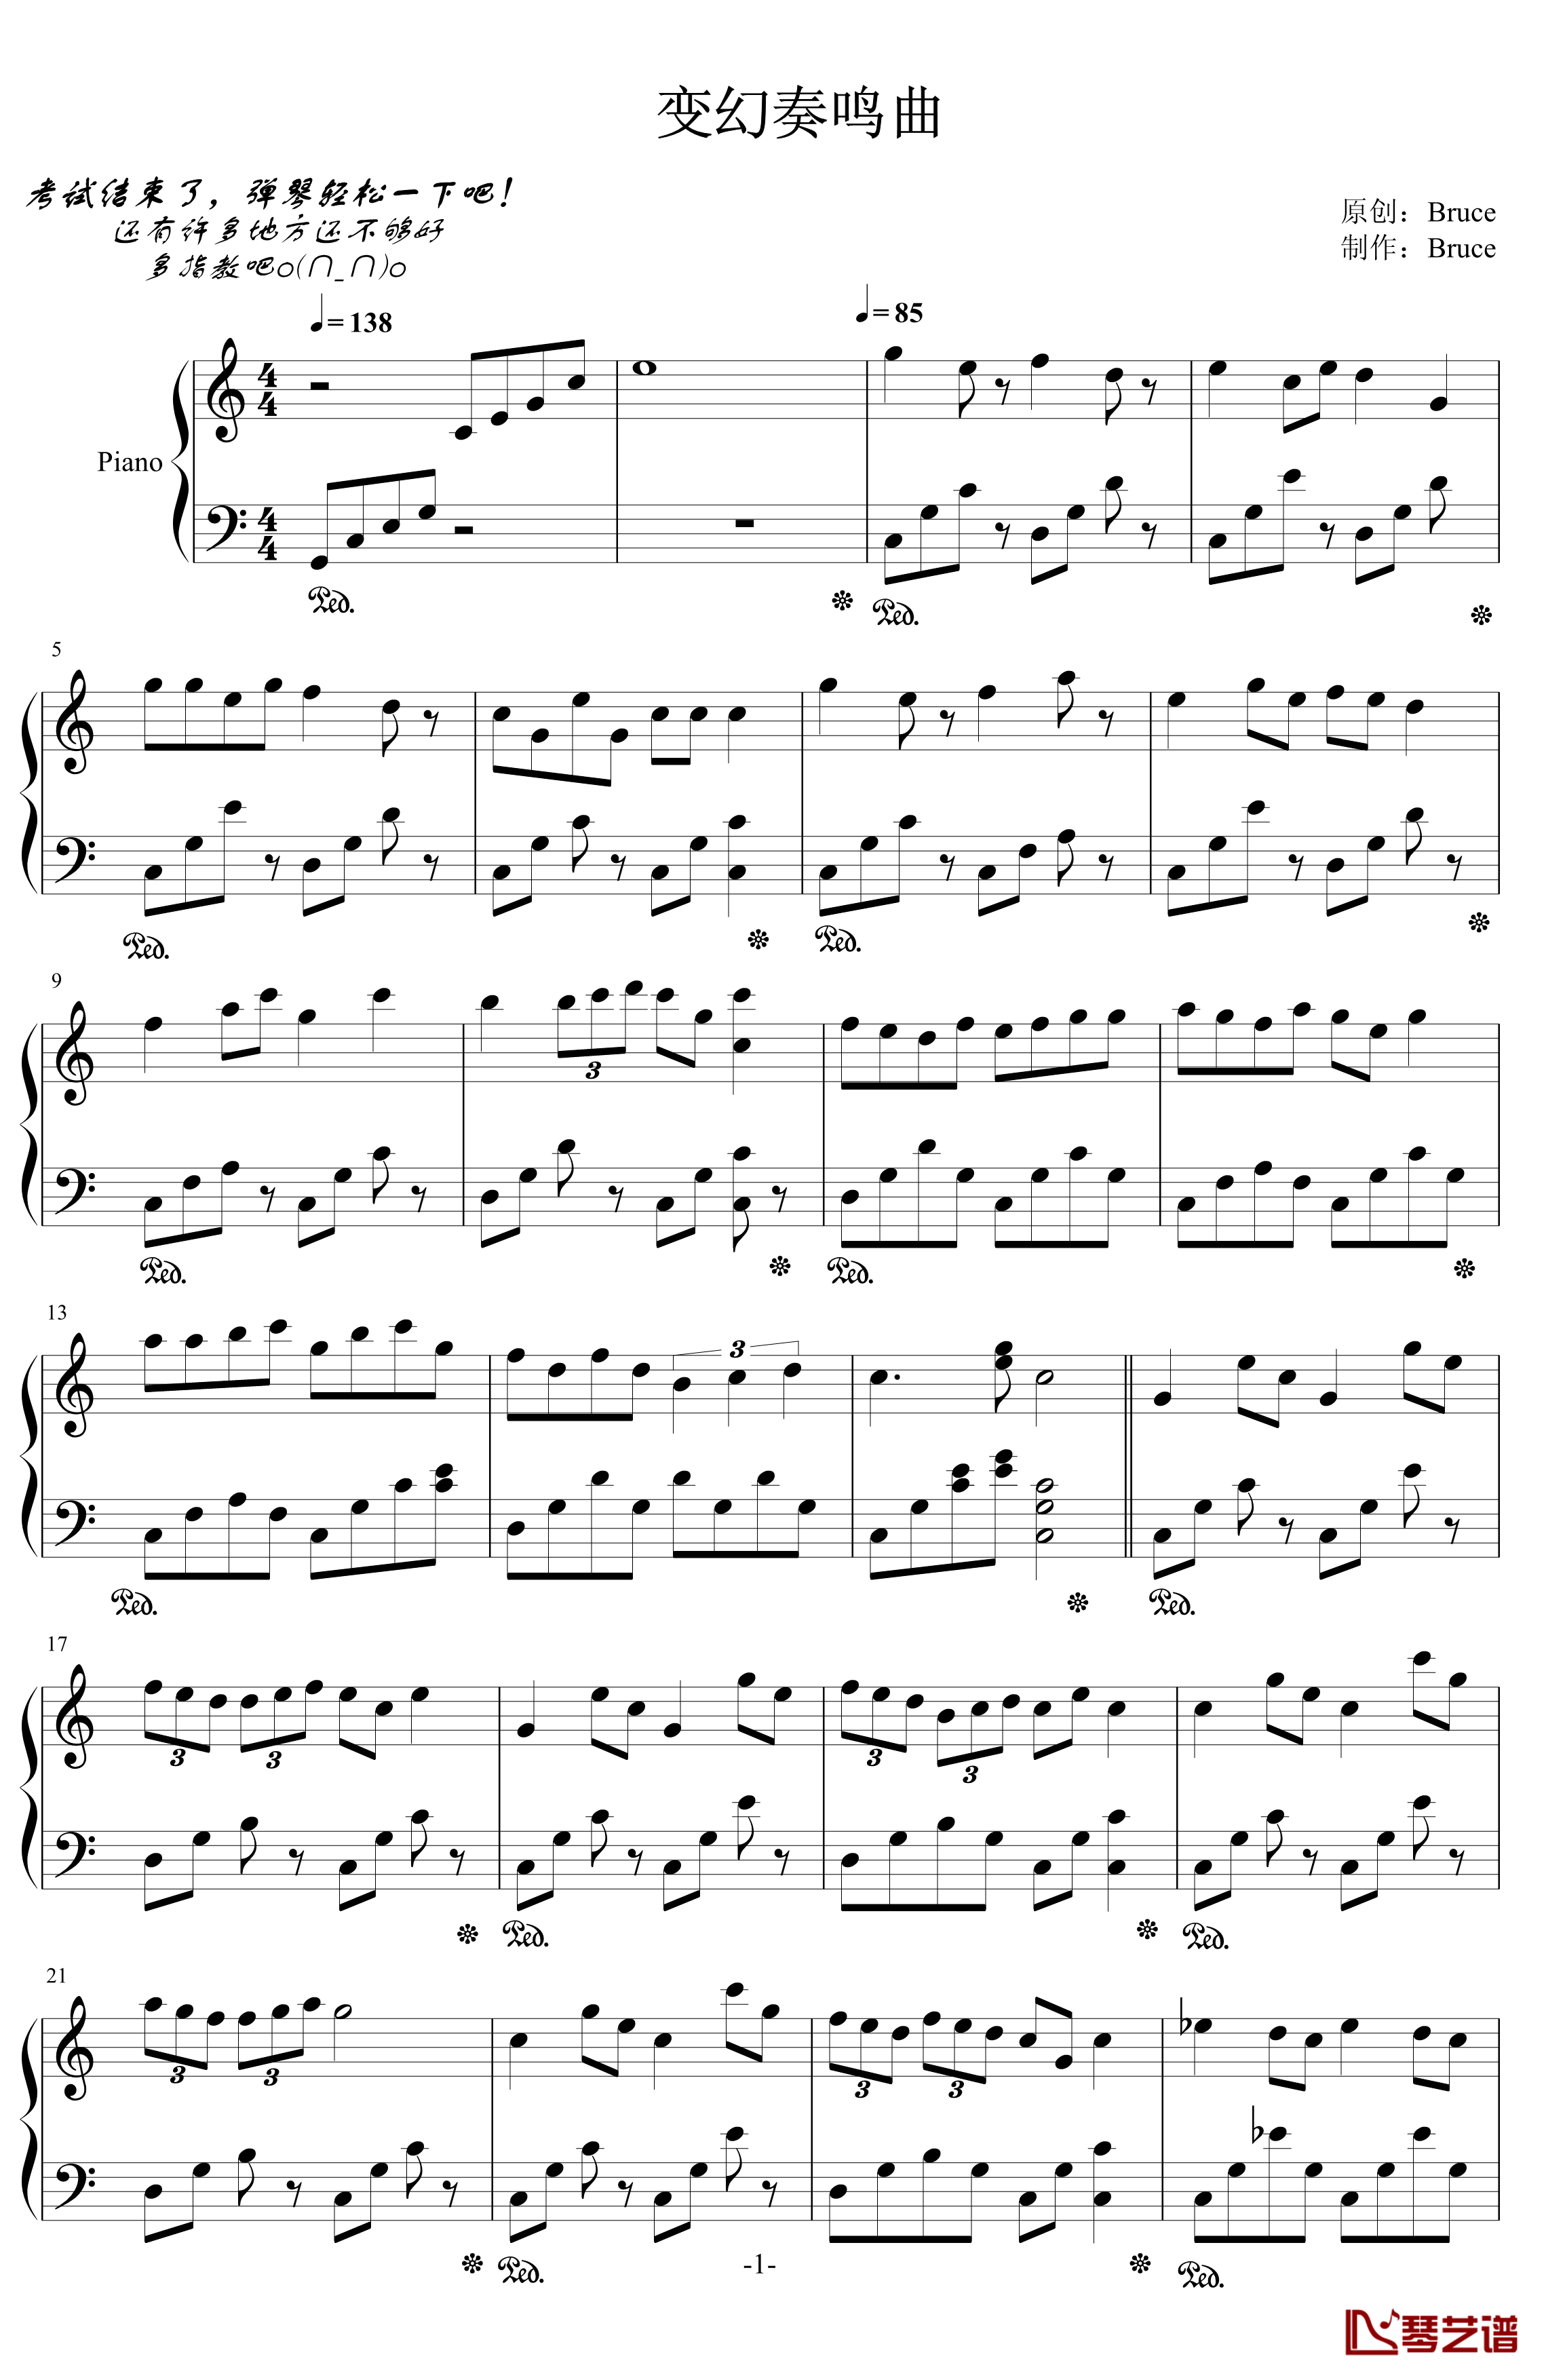 变幻奏鸣曲钢琴谱-dalixin7531